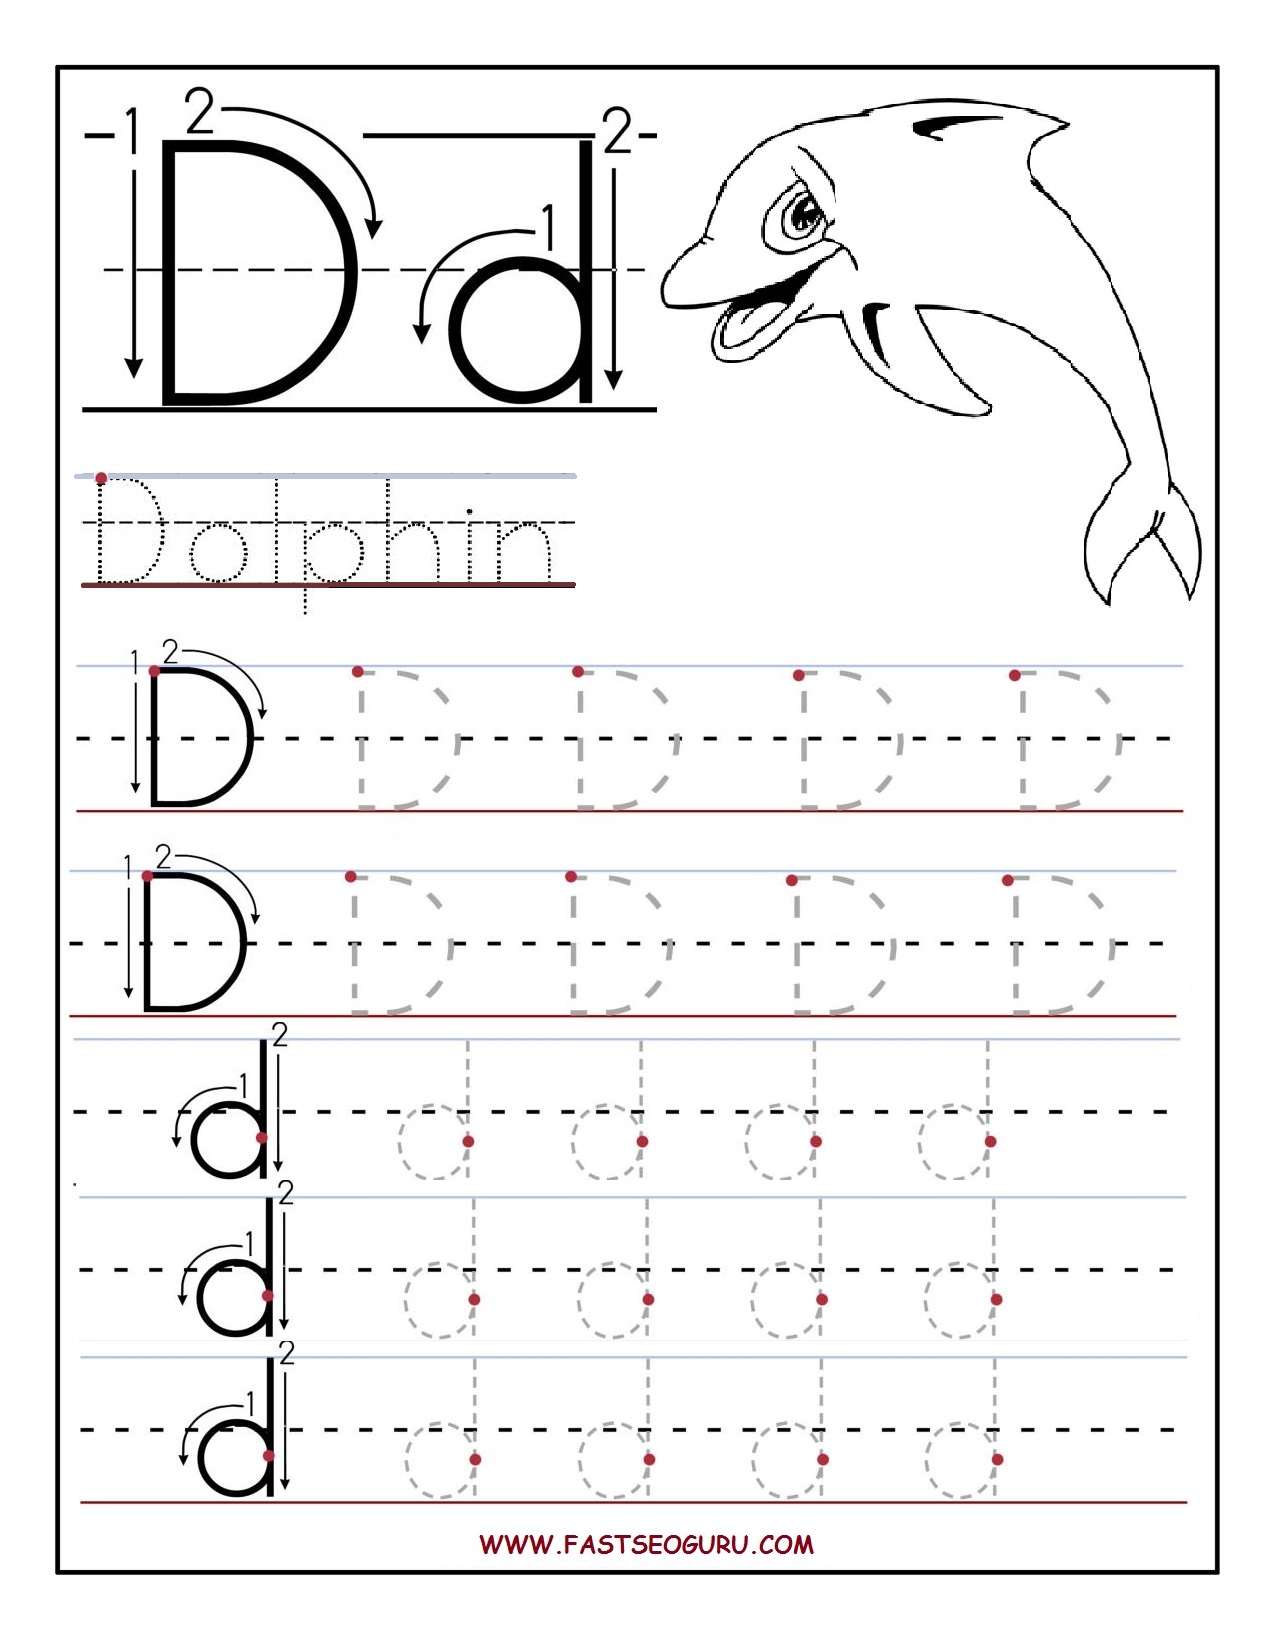 Collection of Free letter d worksheets for kindergarten | Download 